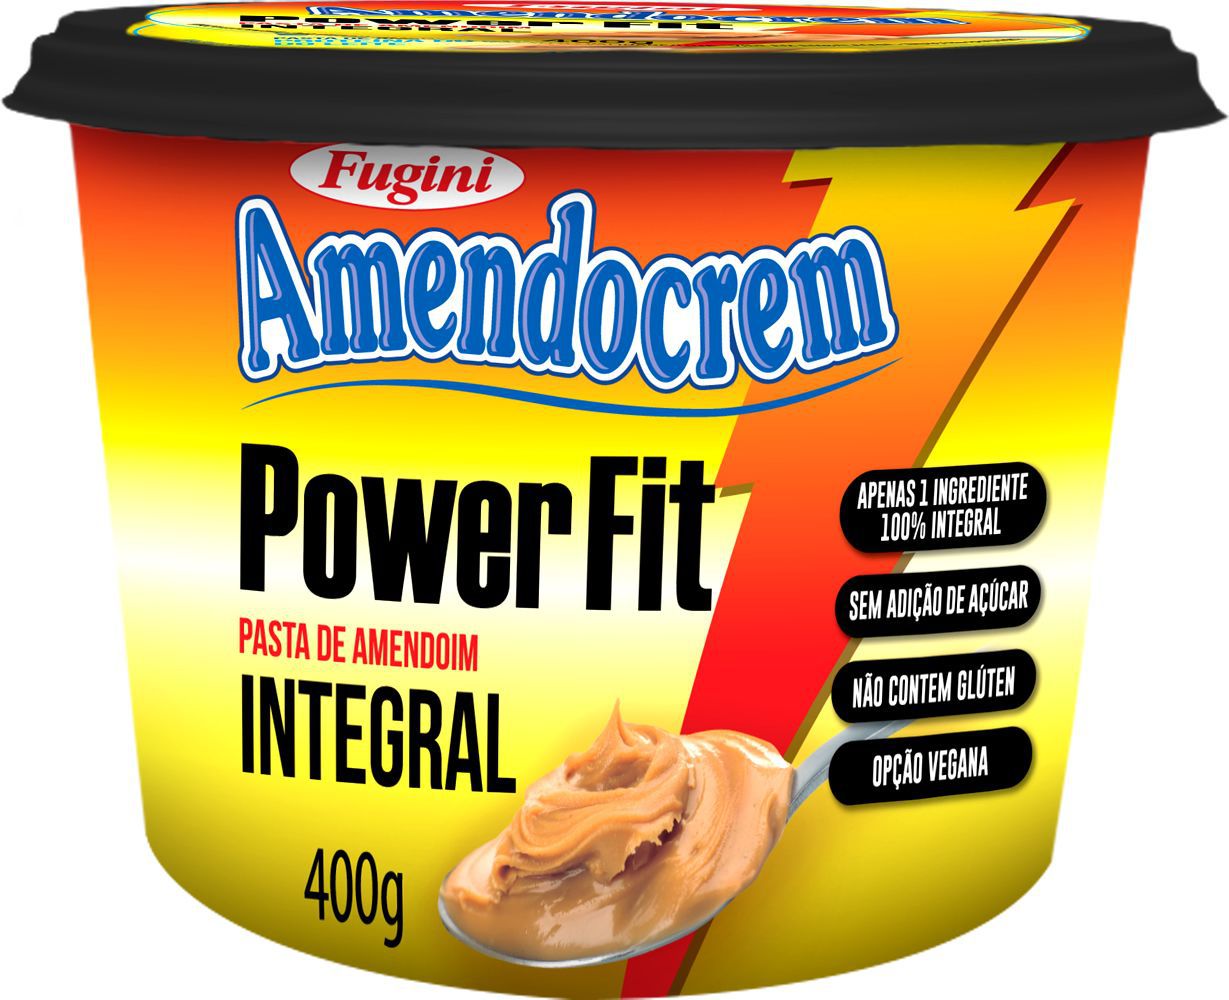 Pasta de Amendoim Integral Power Fit Amendocream Fugini 400g